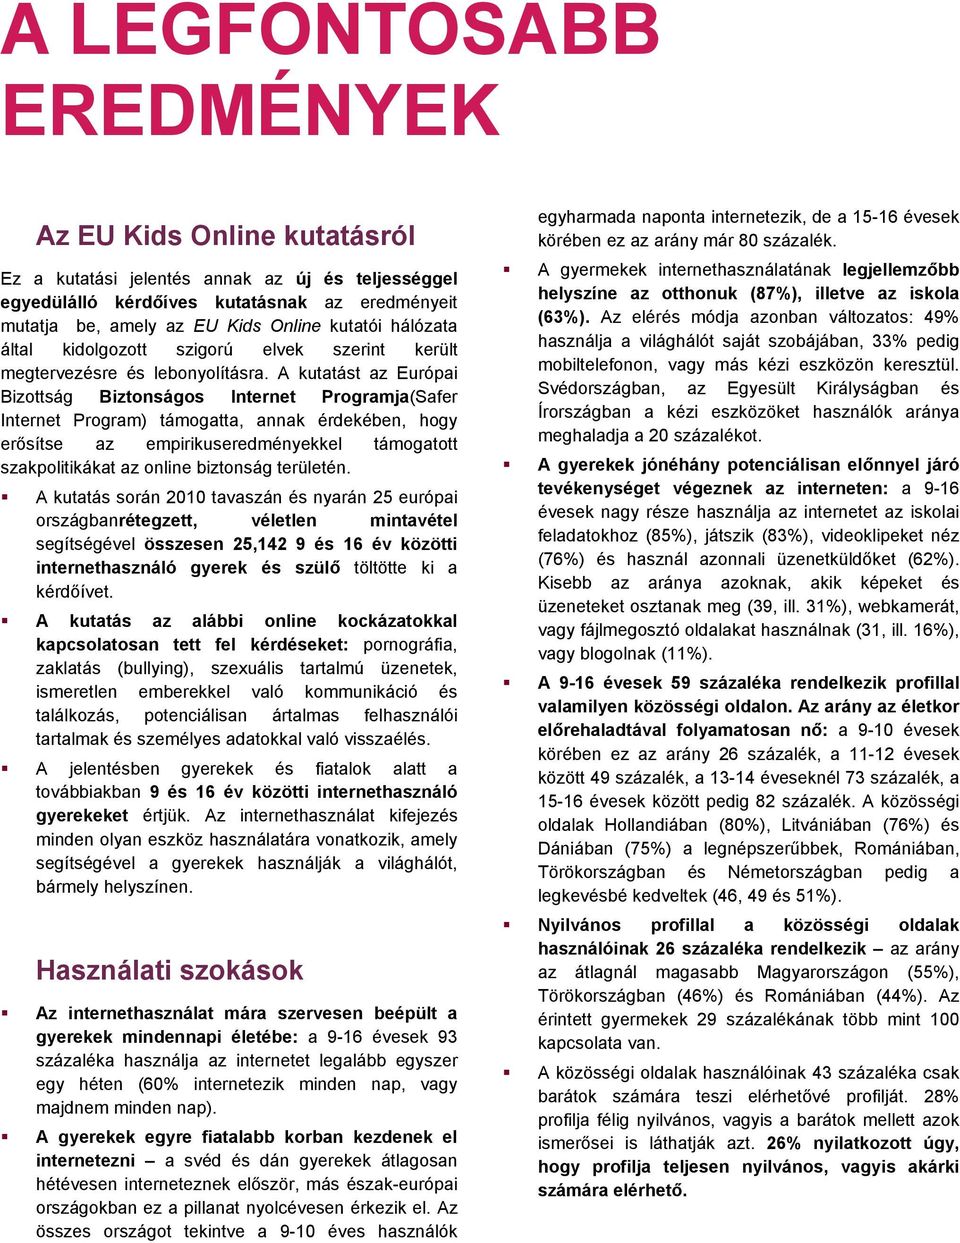 A kutatást az Európai Bizottság Biztonságos Internet Programja(Safer Internet Program) támogatta, annak érdekében, hogy erősítse az empirikuseredményekkel támogatott szakpolitikákat az online